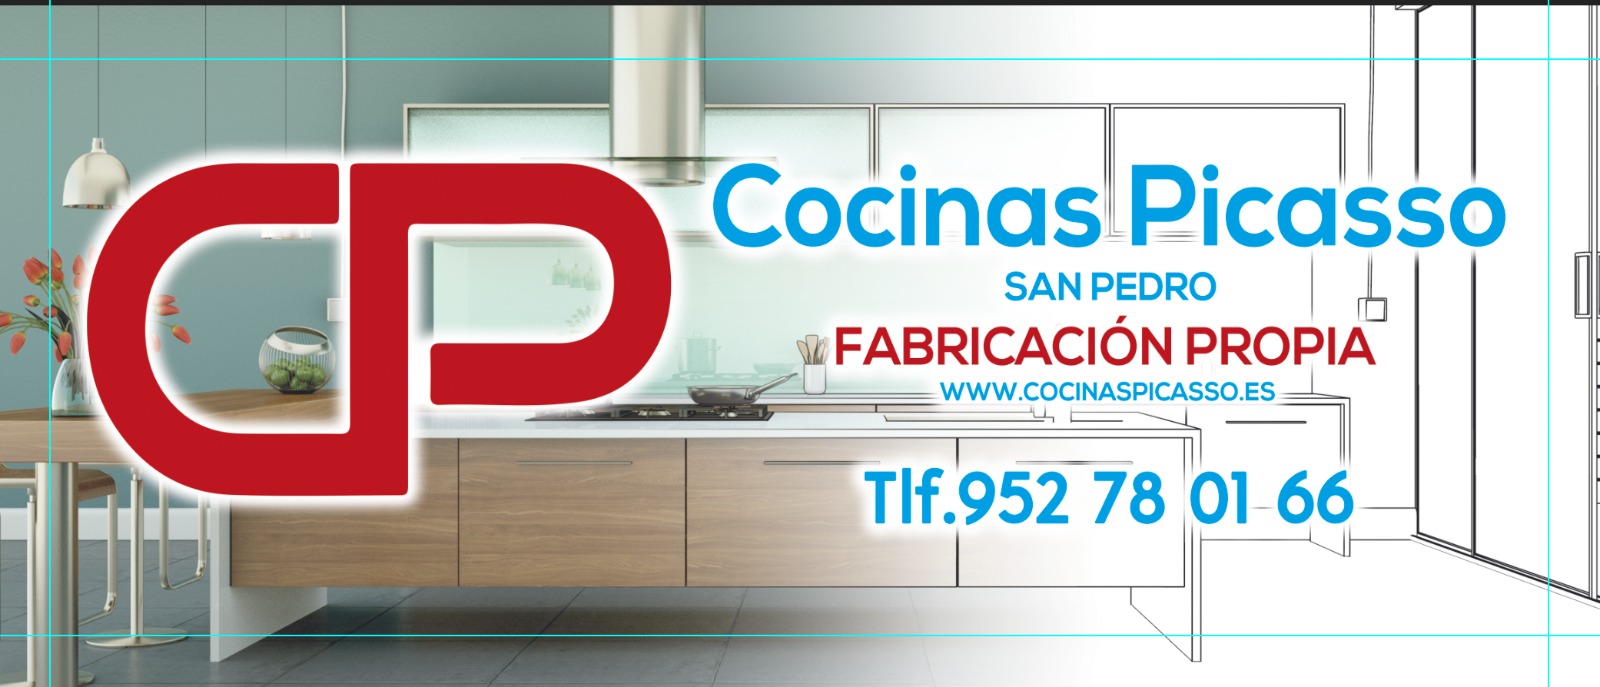 Logo y datos de contacto de Cocinas Picasso. Fabricación propia. Teléfono 952780166